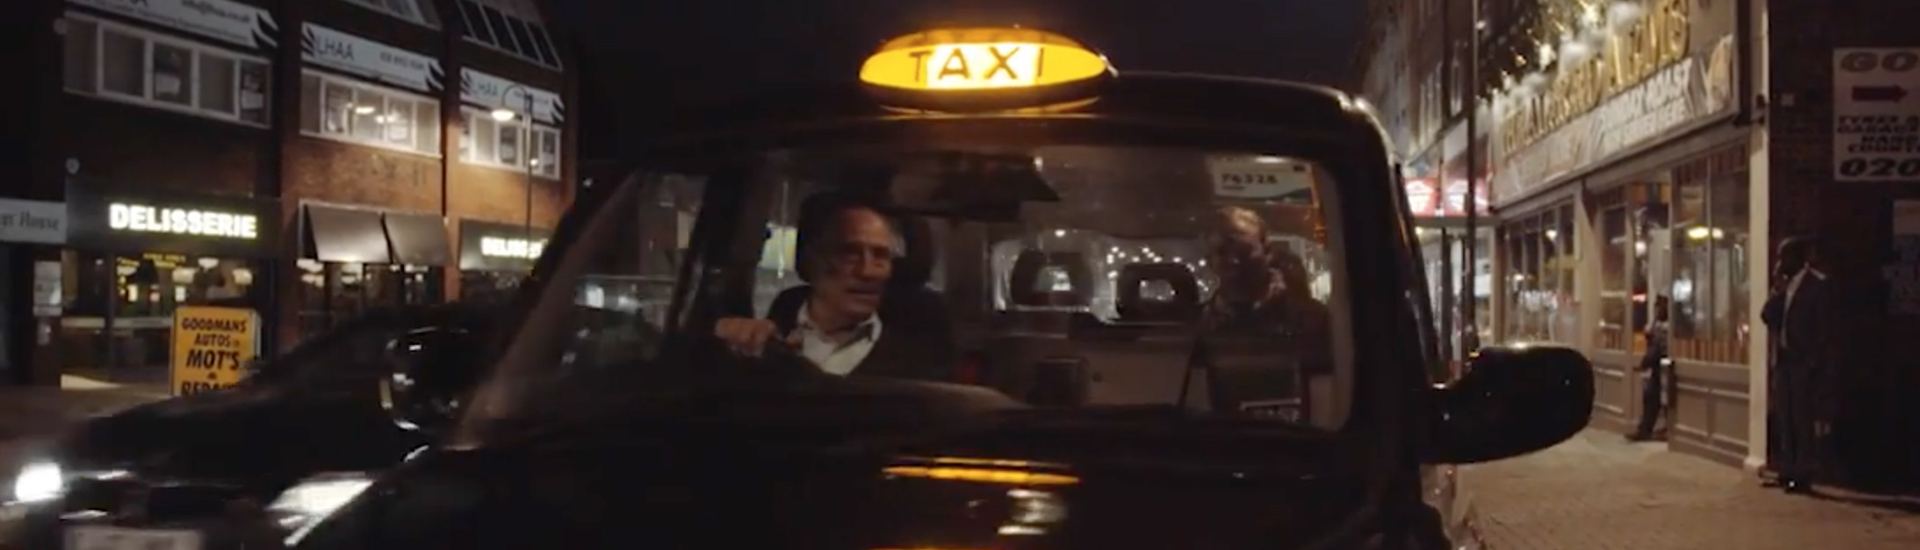 Taxifahrer, der eine Zahlung empfängt.